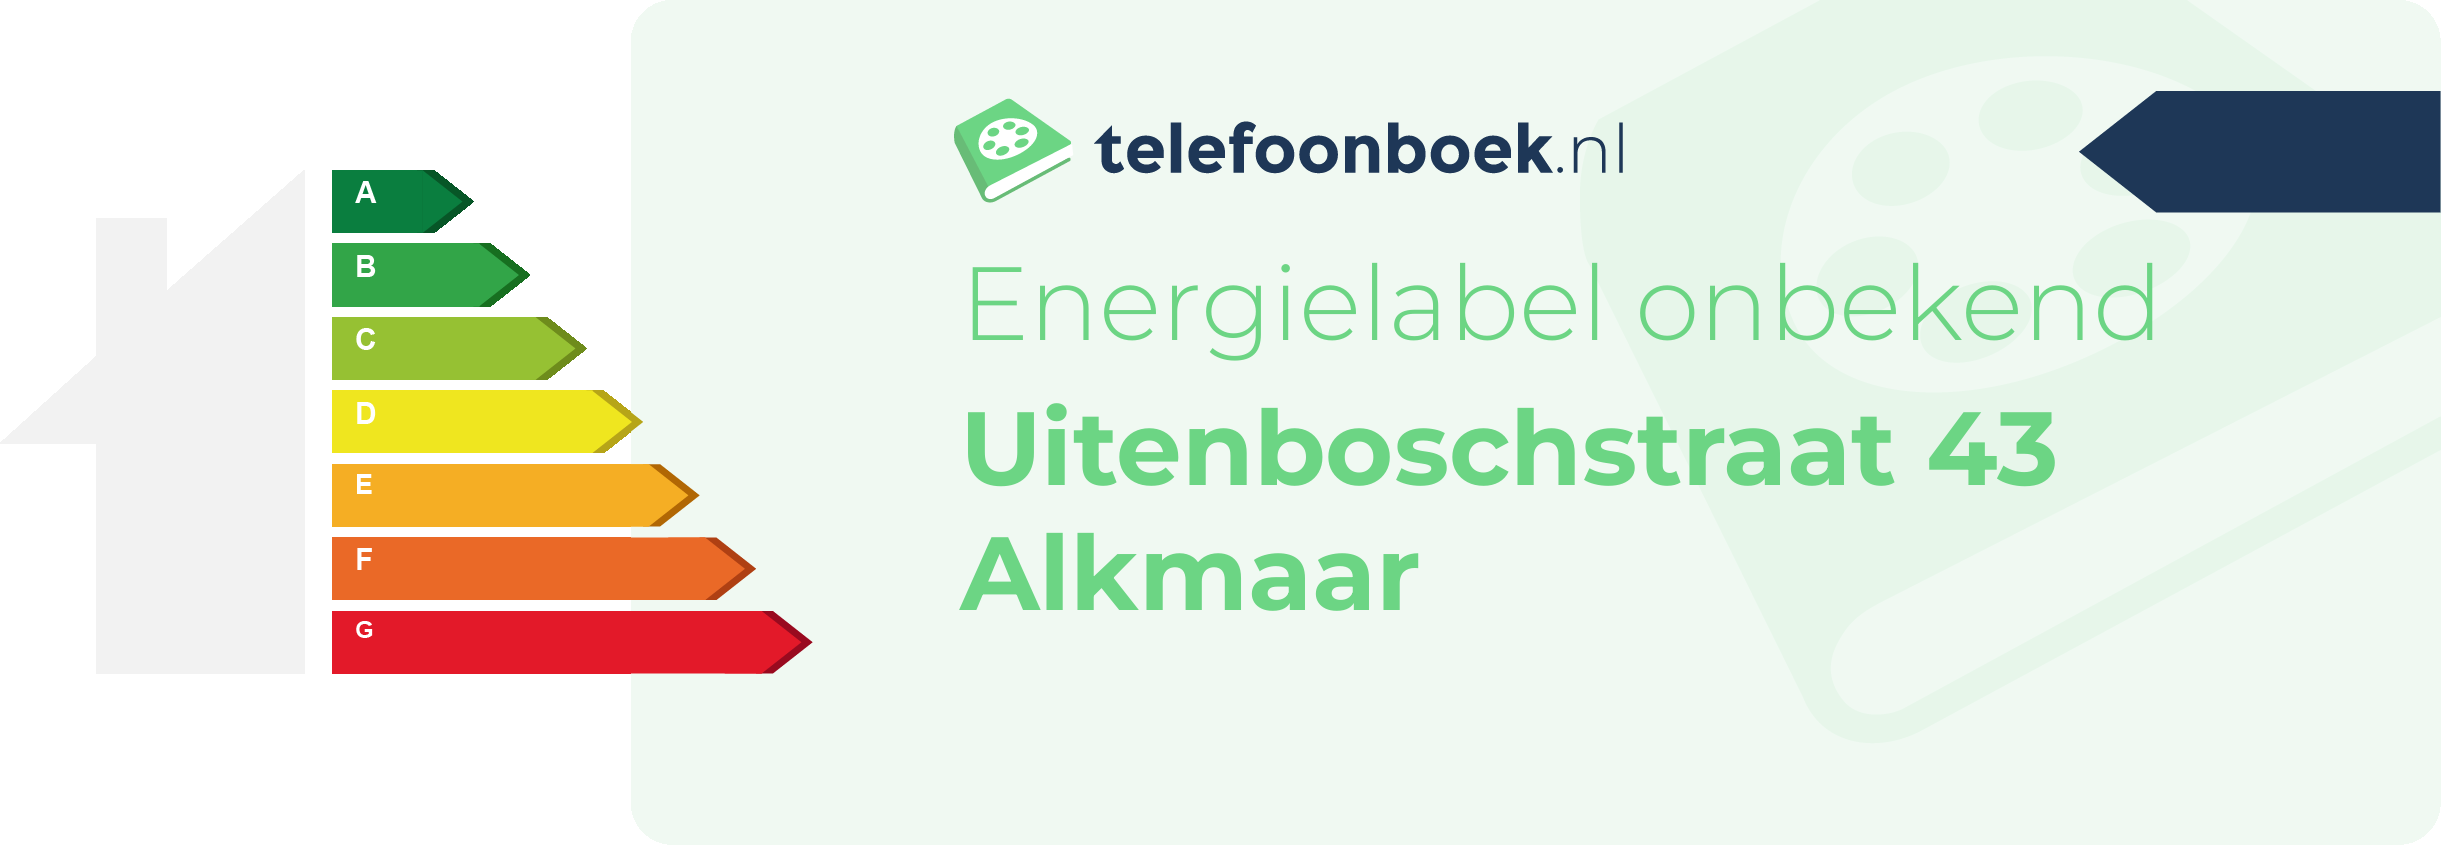 Energielabel Uitenboschstraat 43 Alkmaar